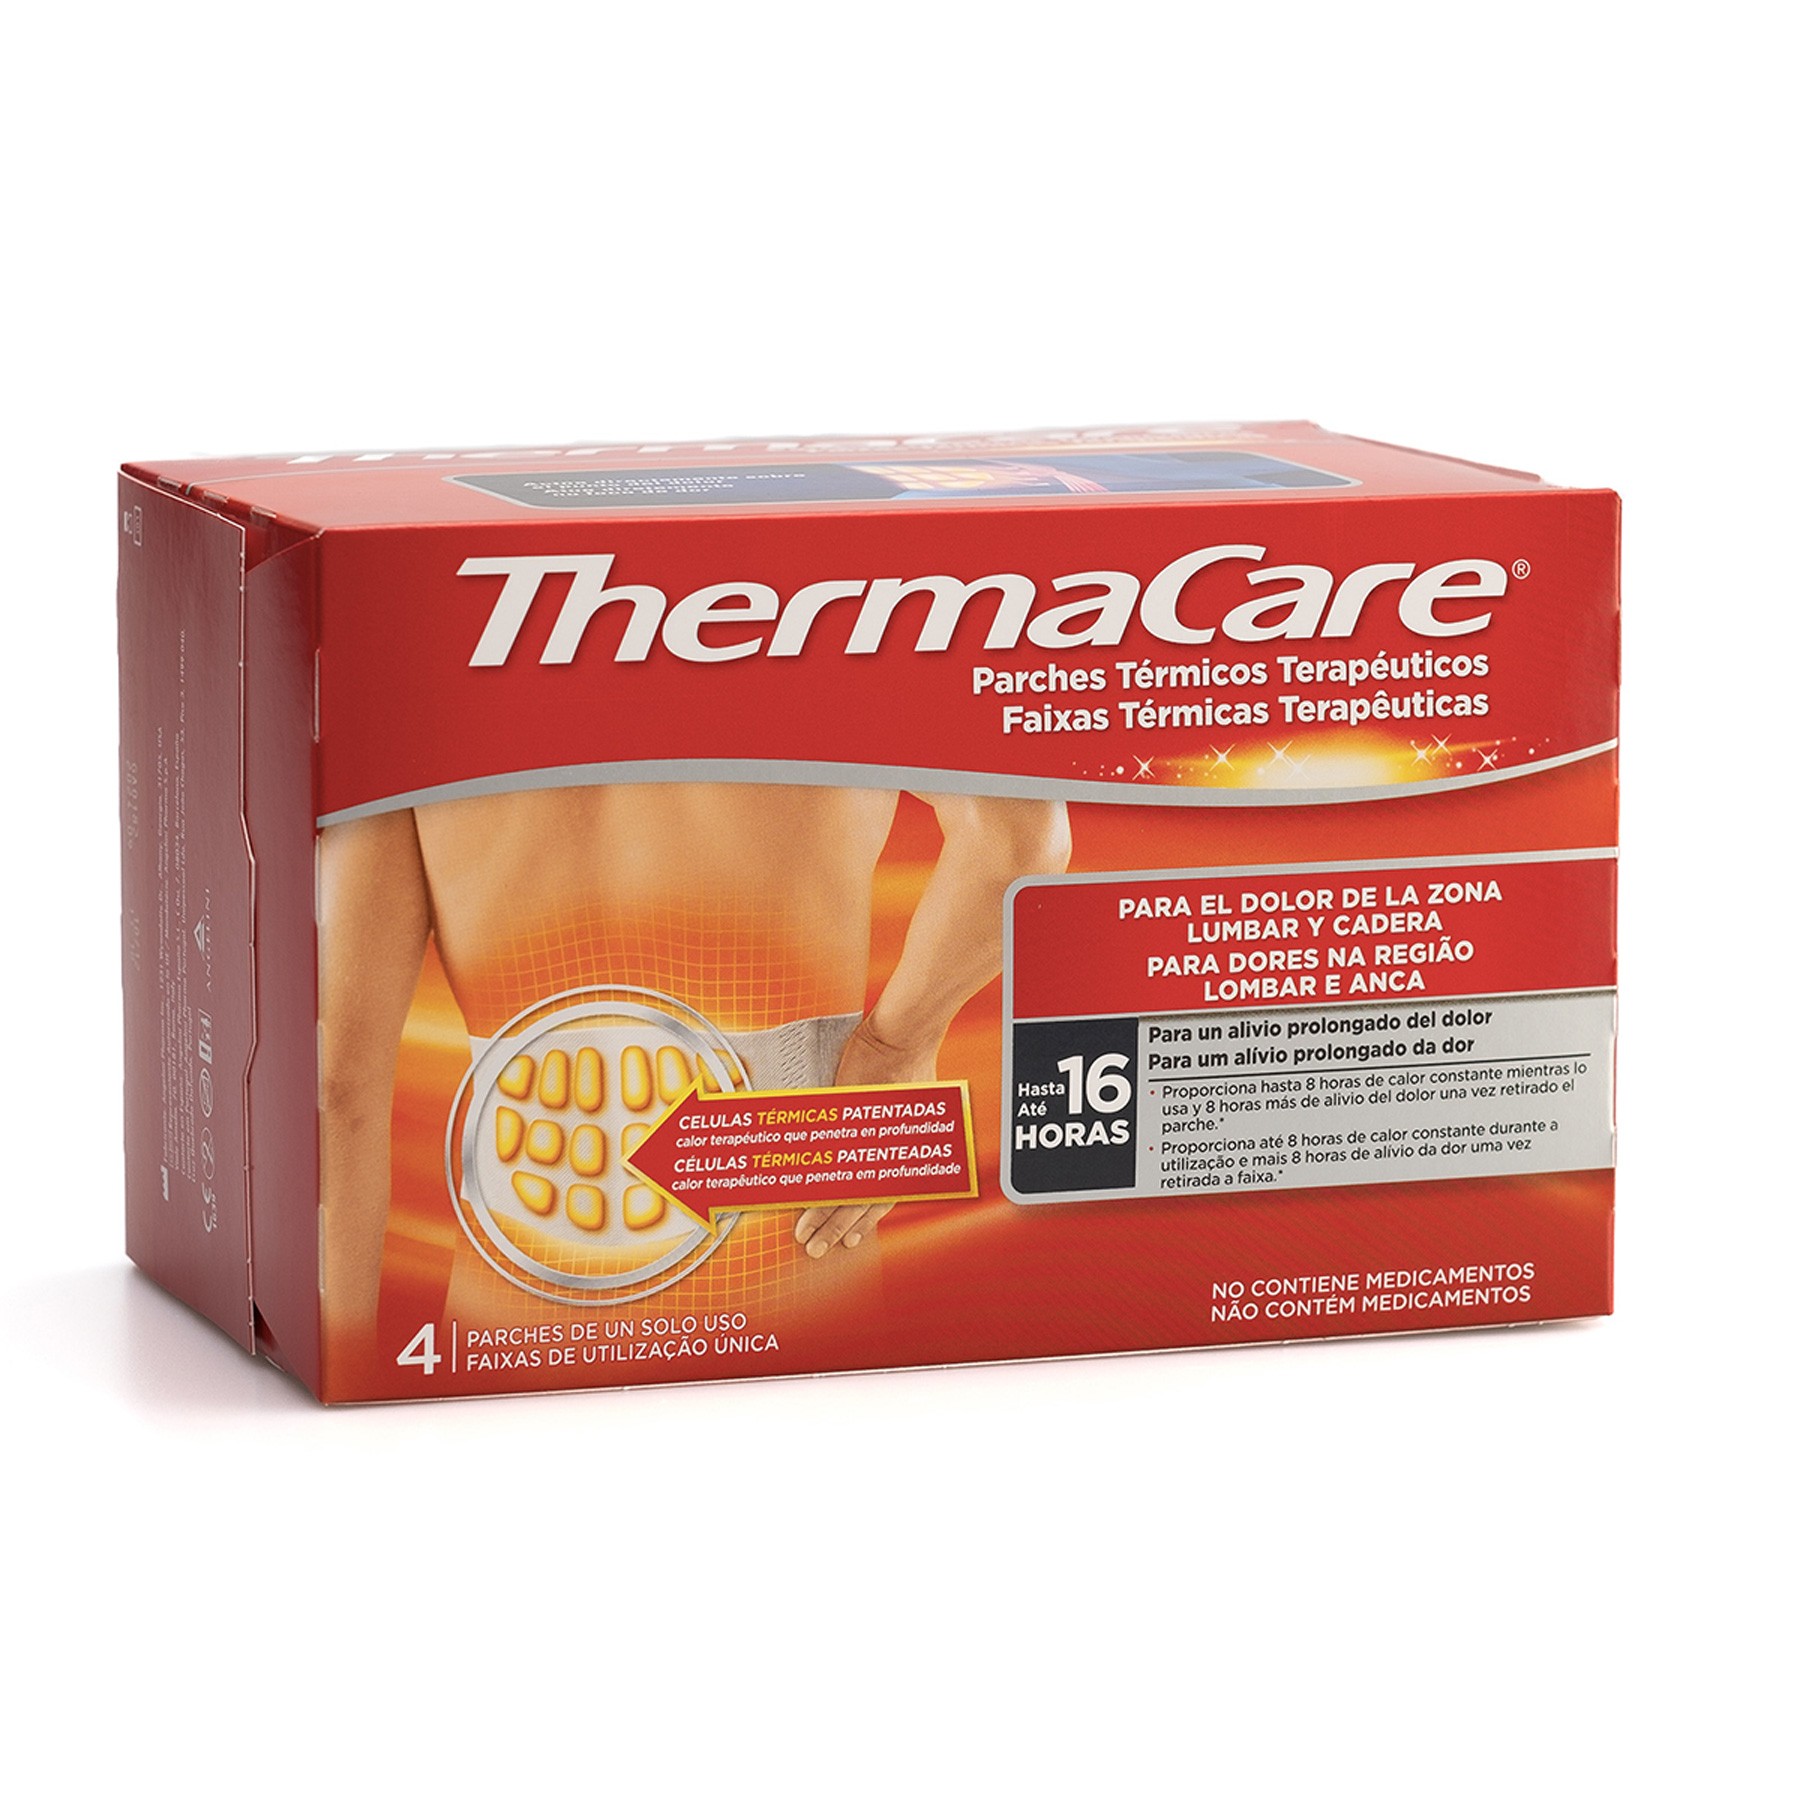 Thermacare lumbar/cadera 4 parches térmicos